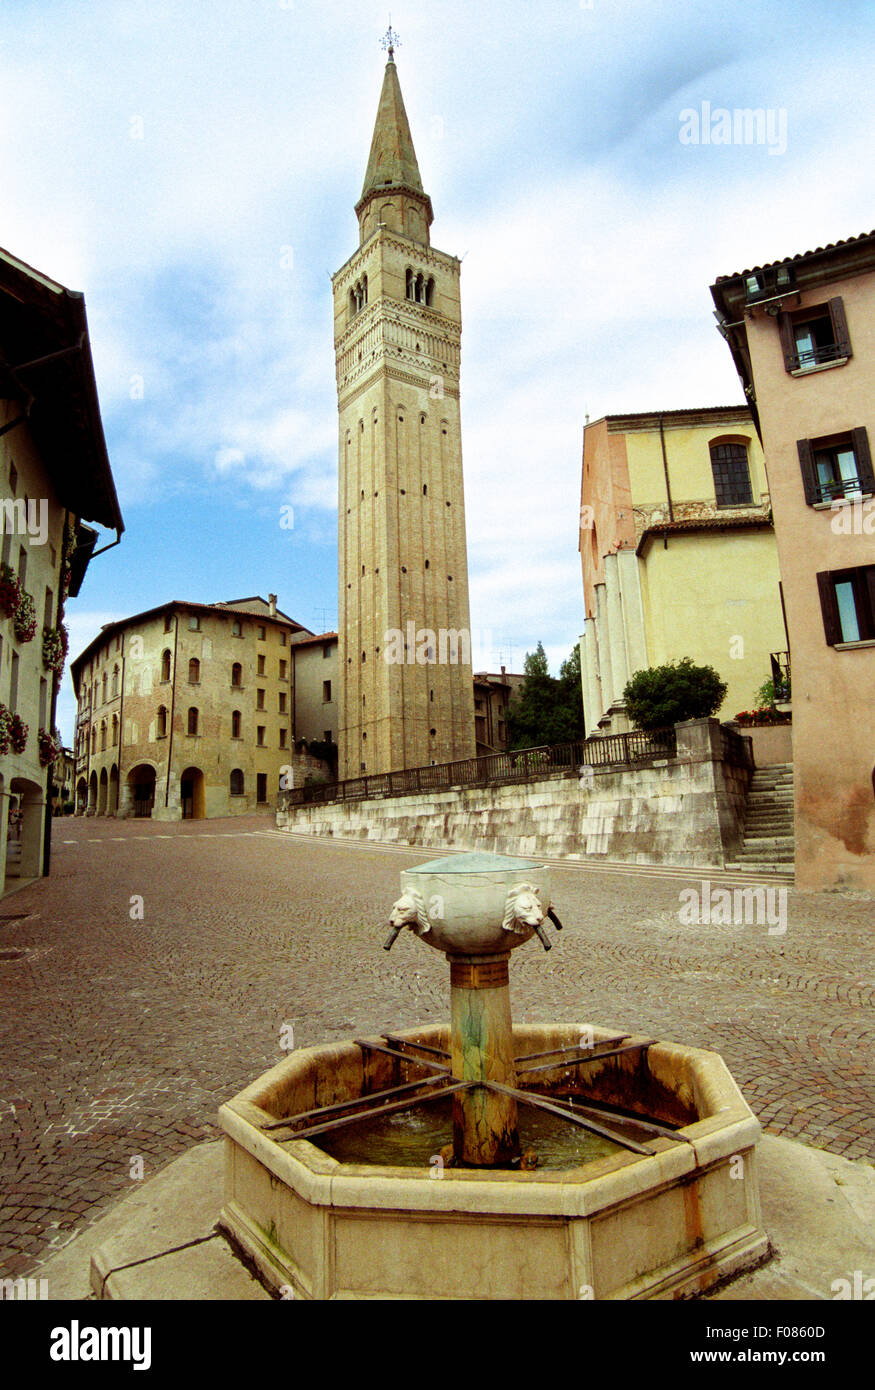 Italy, Friuli Venezia Giulia, Pordenone, Fountain Square. Stock Photo